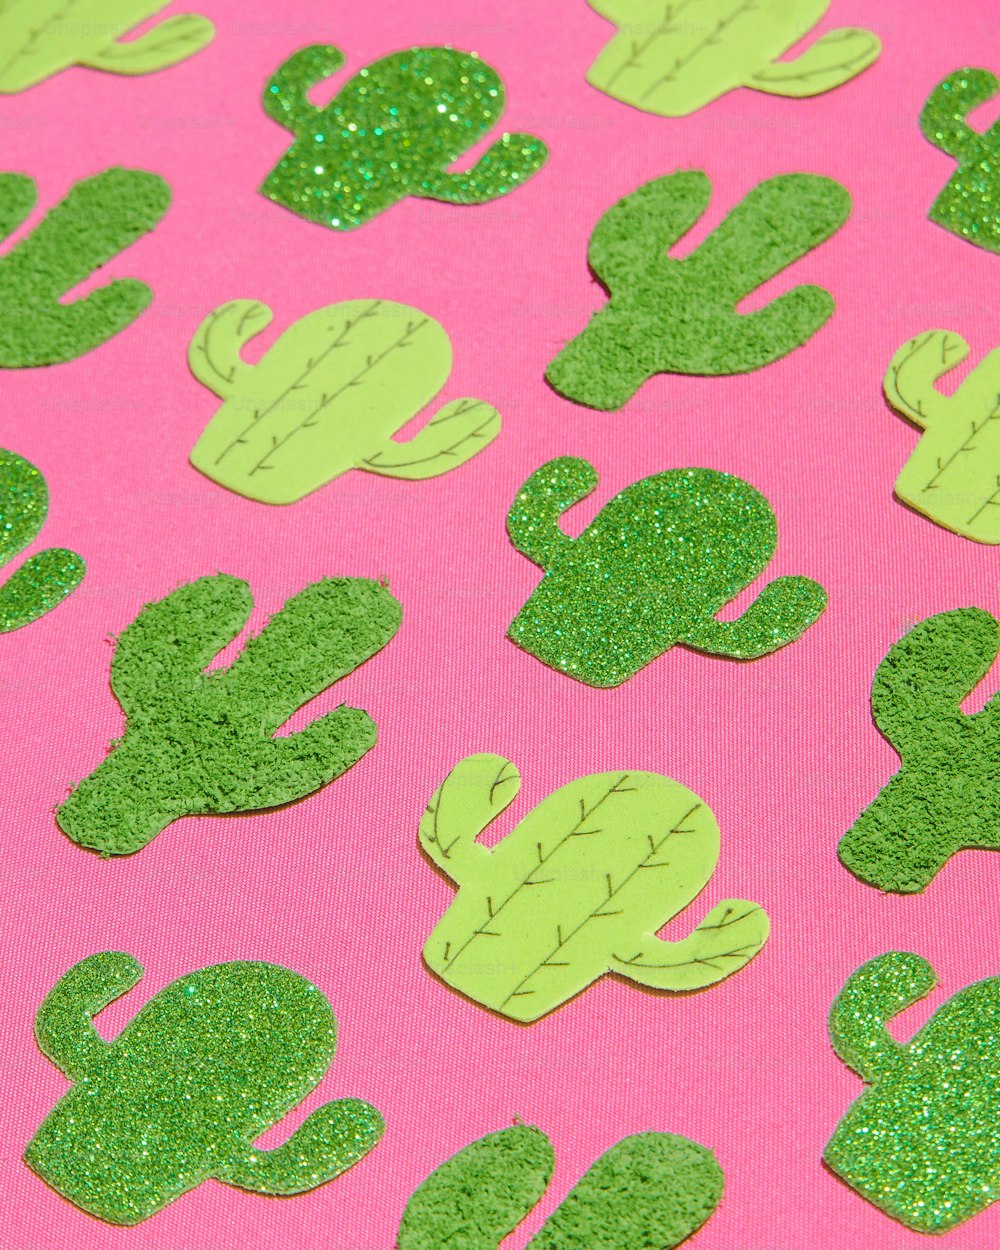 Un fond rose avec des formes de cactus vertes scintillantes